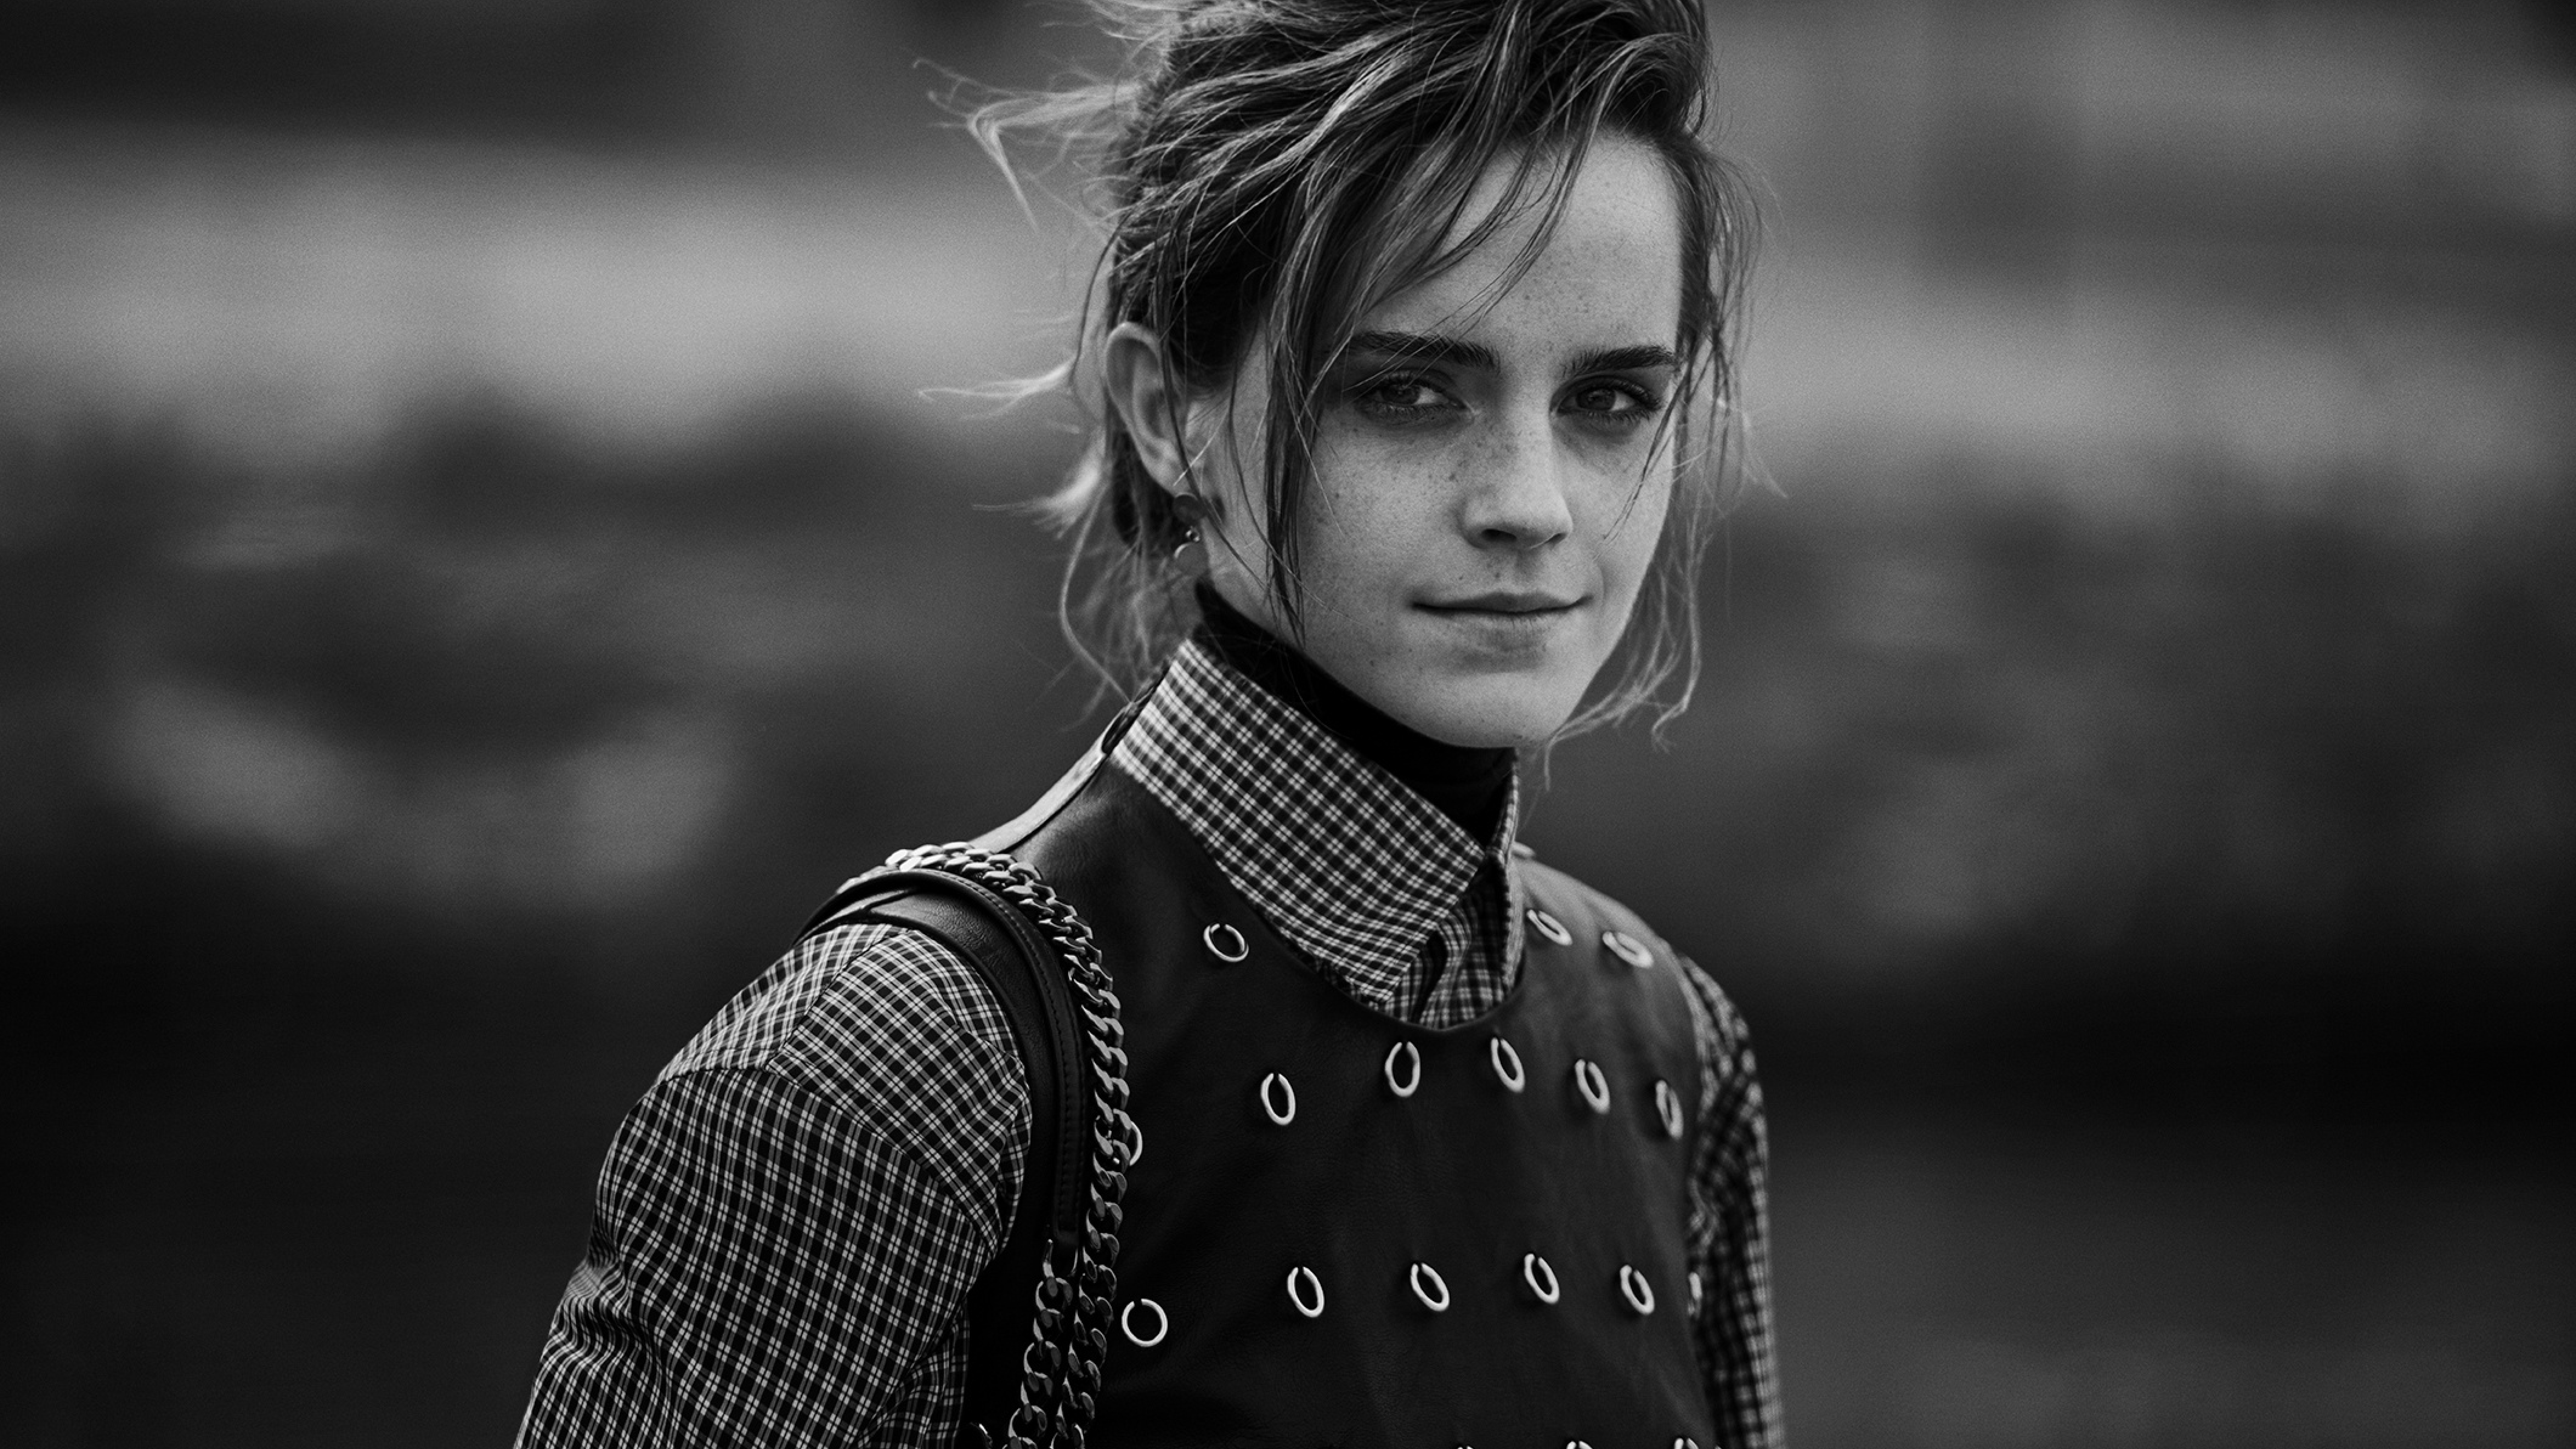 7680x4320 Emma Watson Monochrome Portrait 8k Wallpaper Hd Celebrities 4k Wallpaper Wallpapers Den